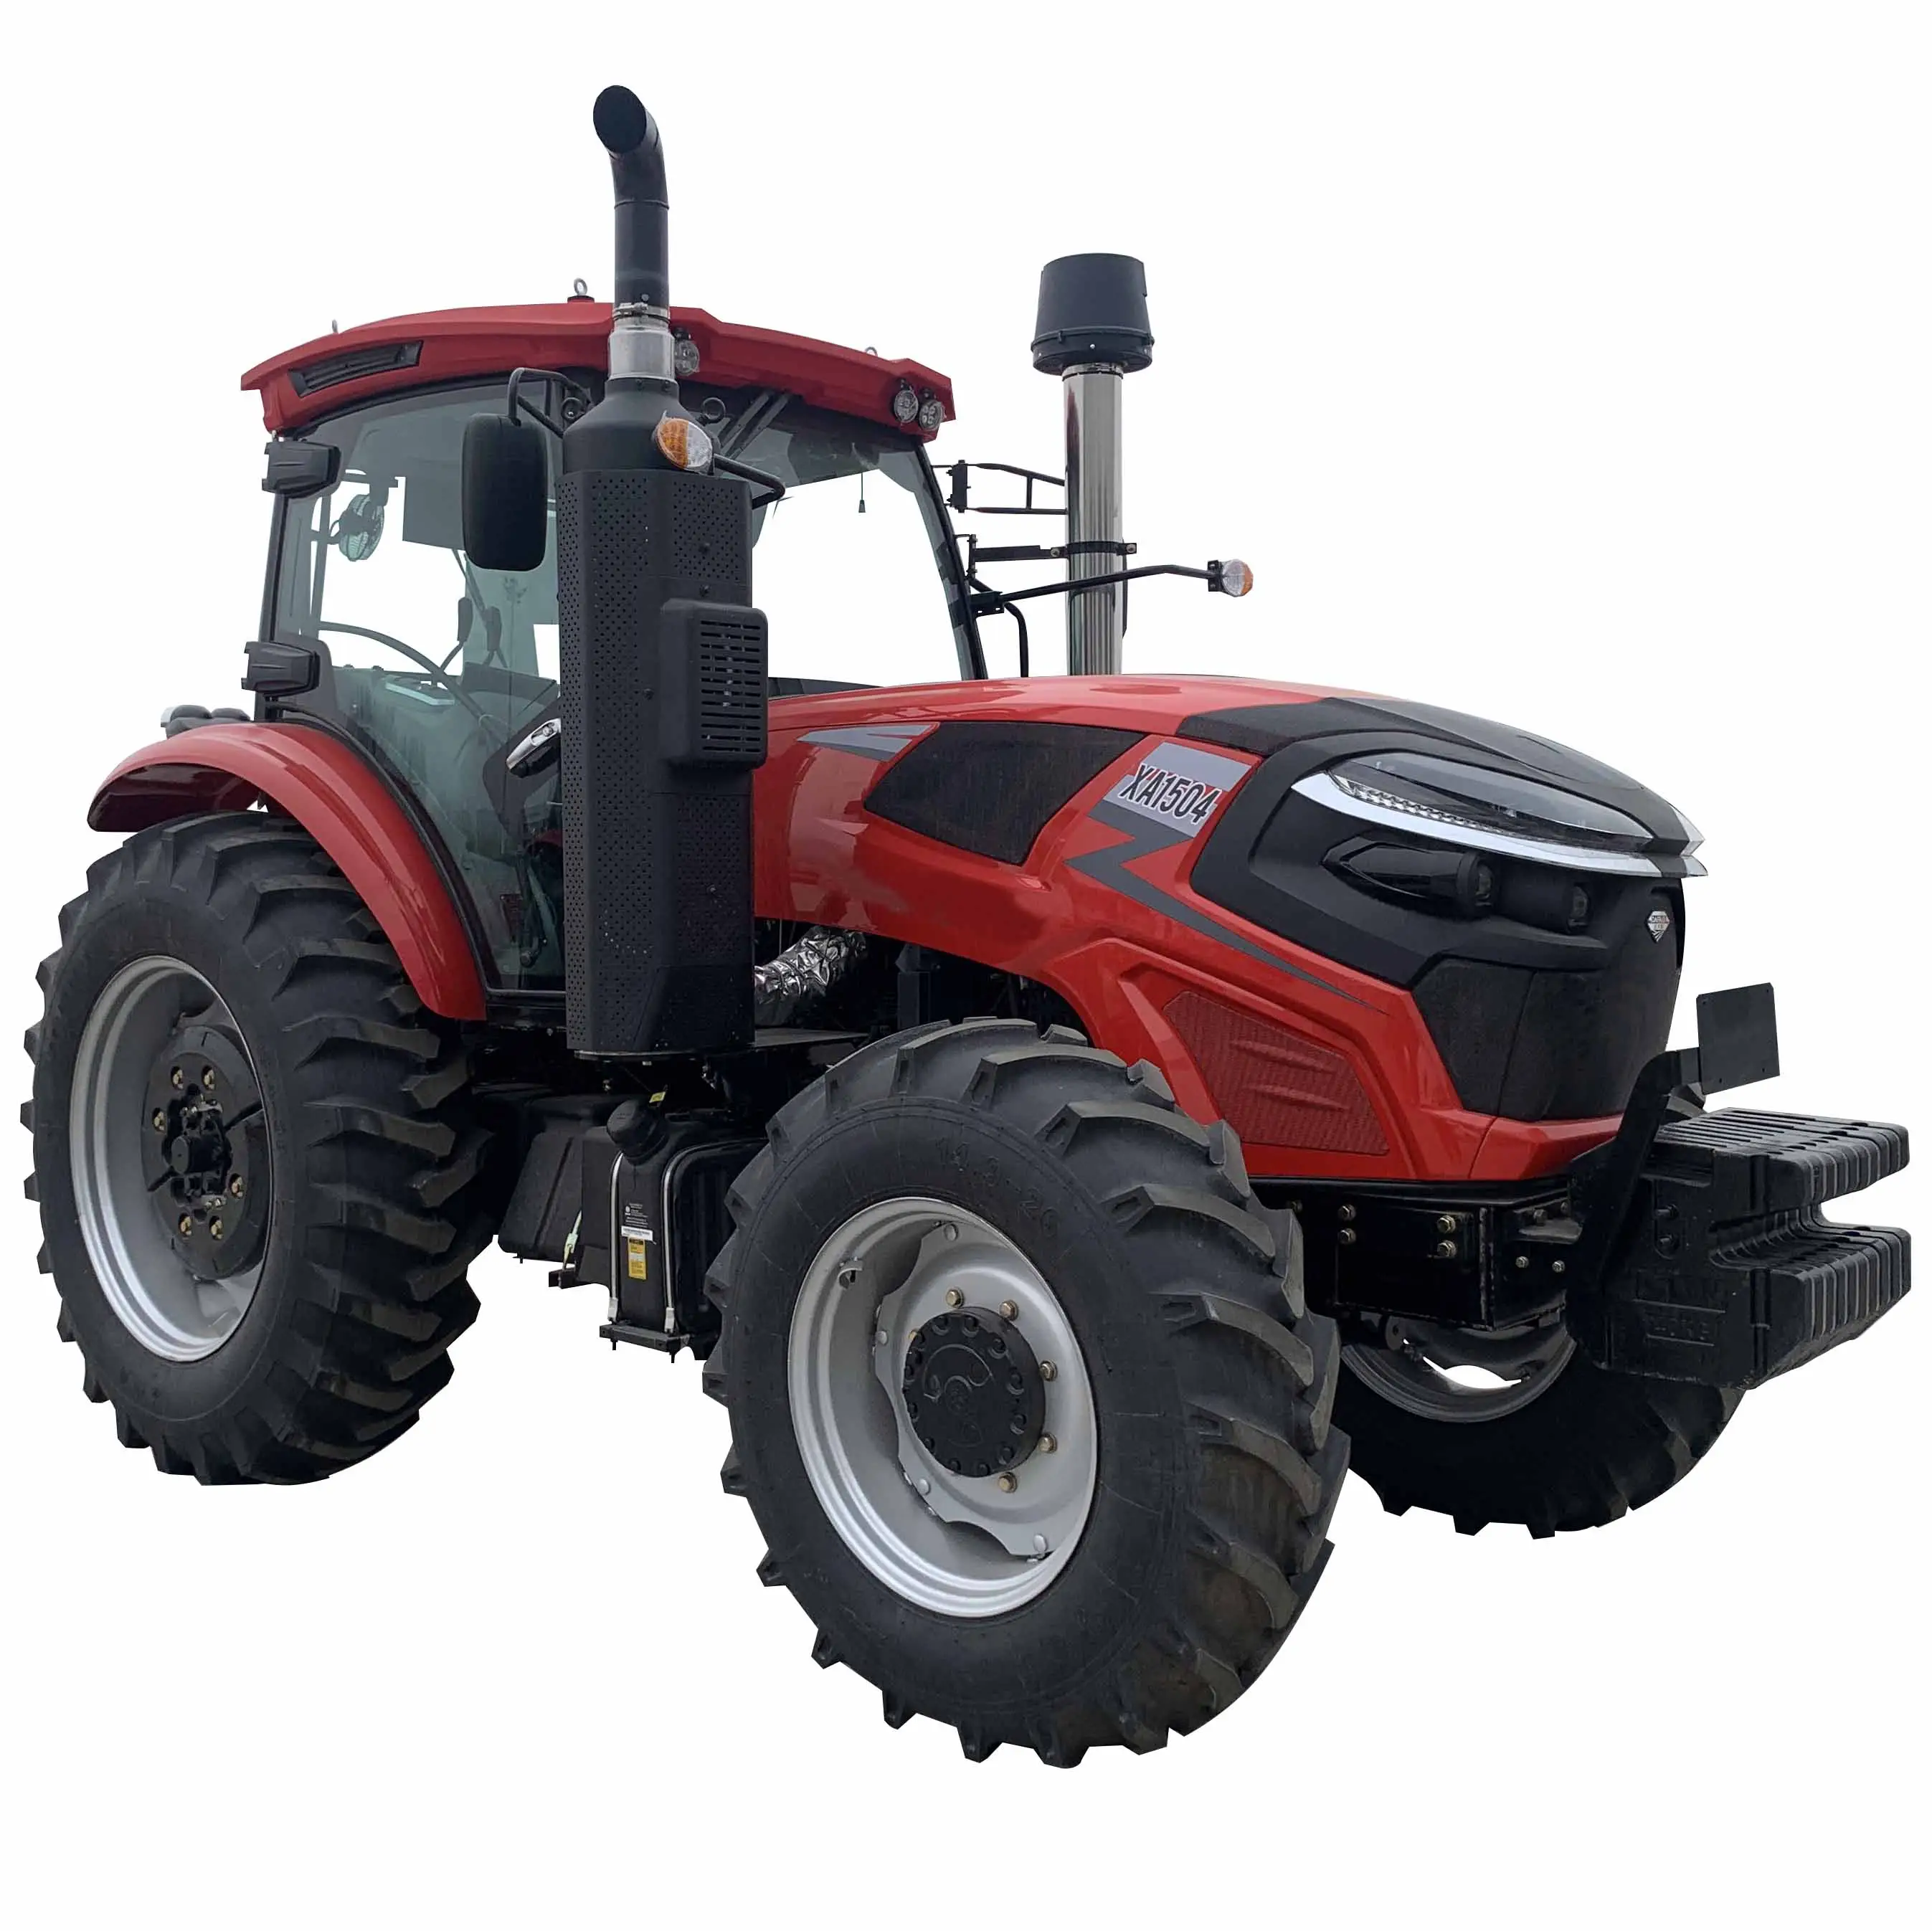 4x4 150hp 4wd tekerlek kompakt yendi kalite çin markalar satılık elektrikli Start ile hidrolik direksiyon AC kabin traktörleri